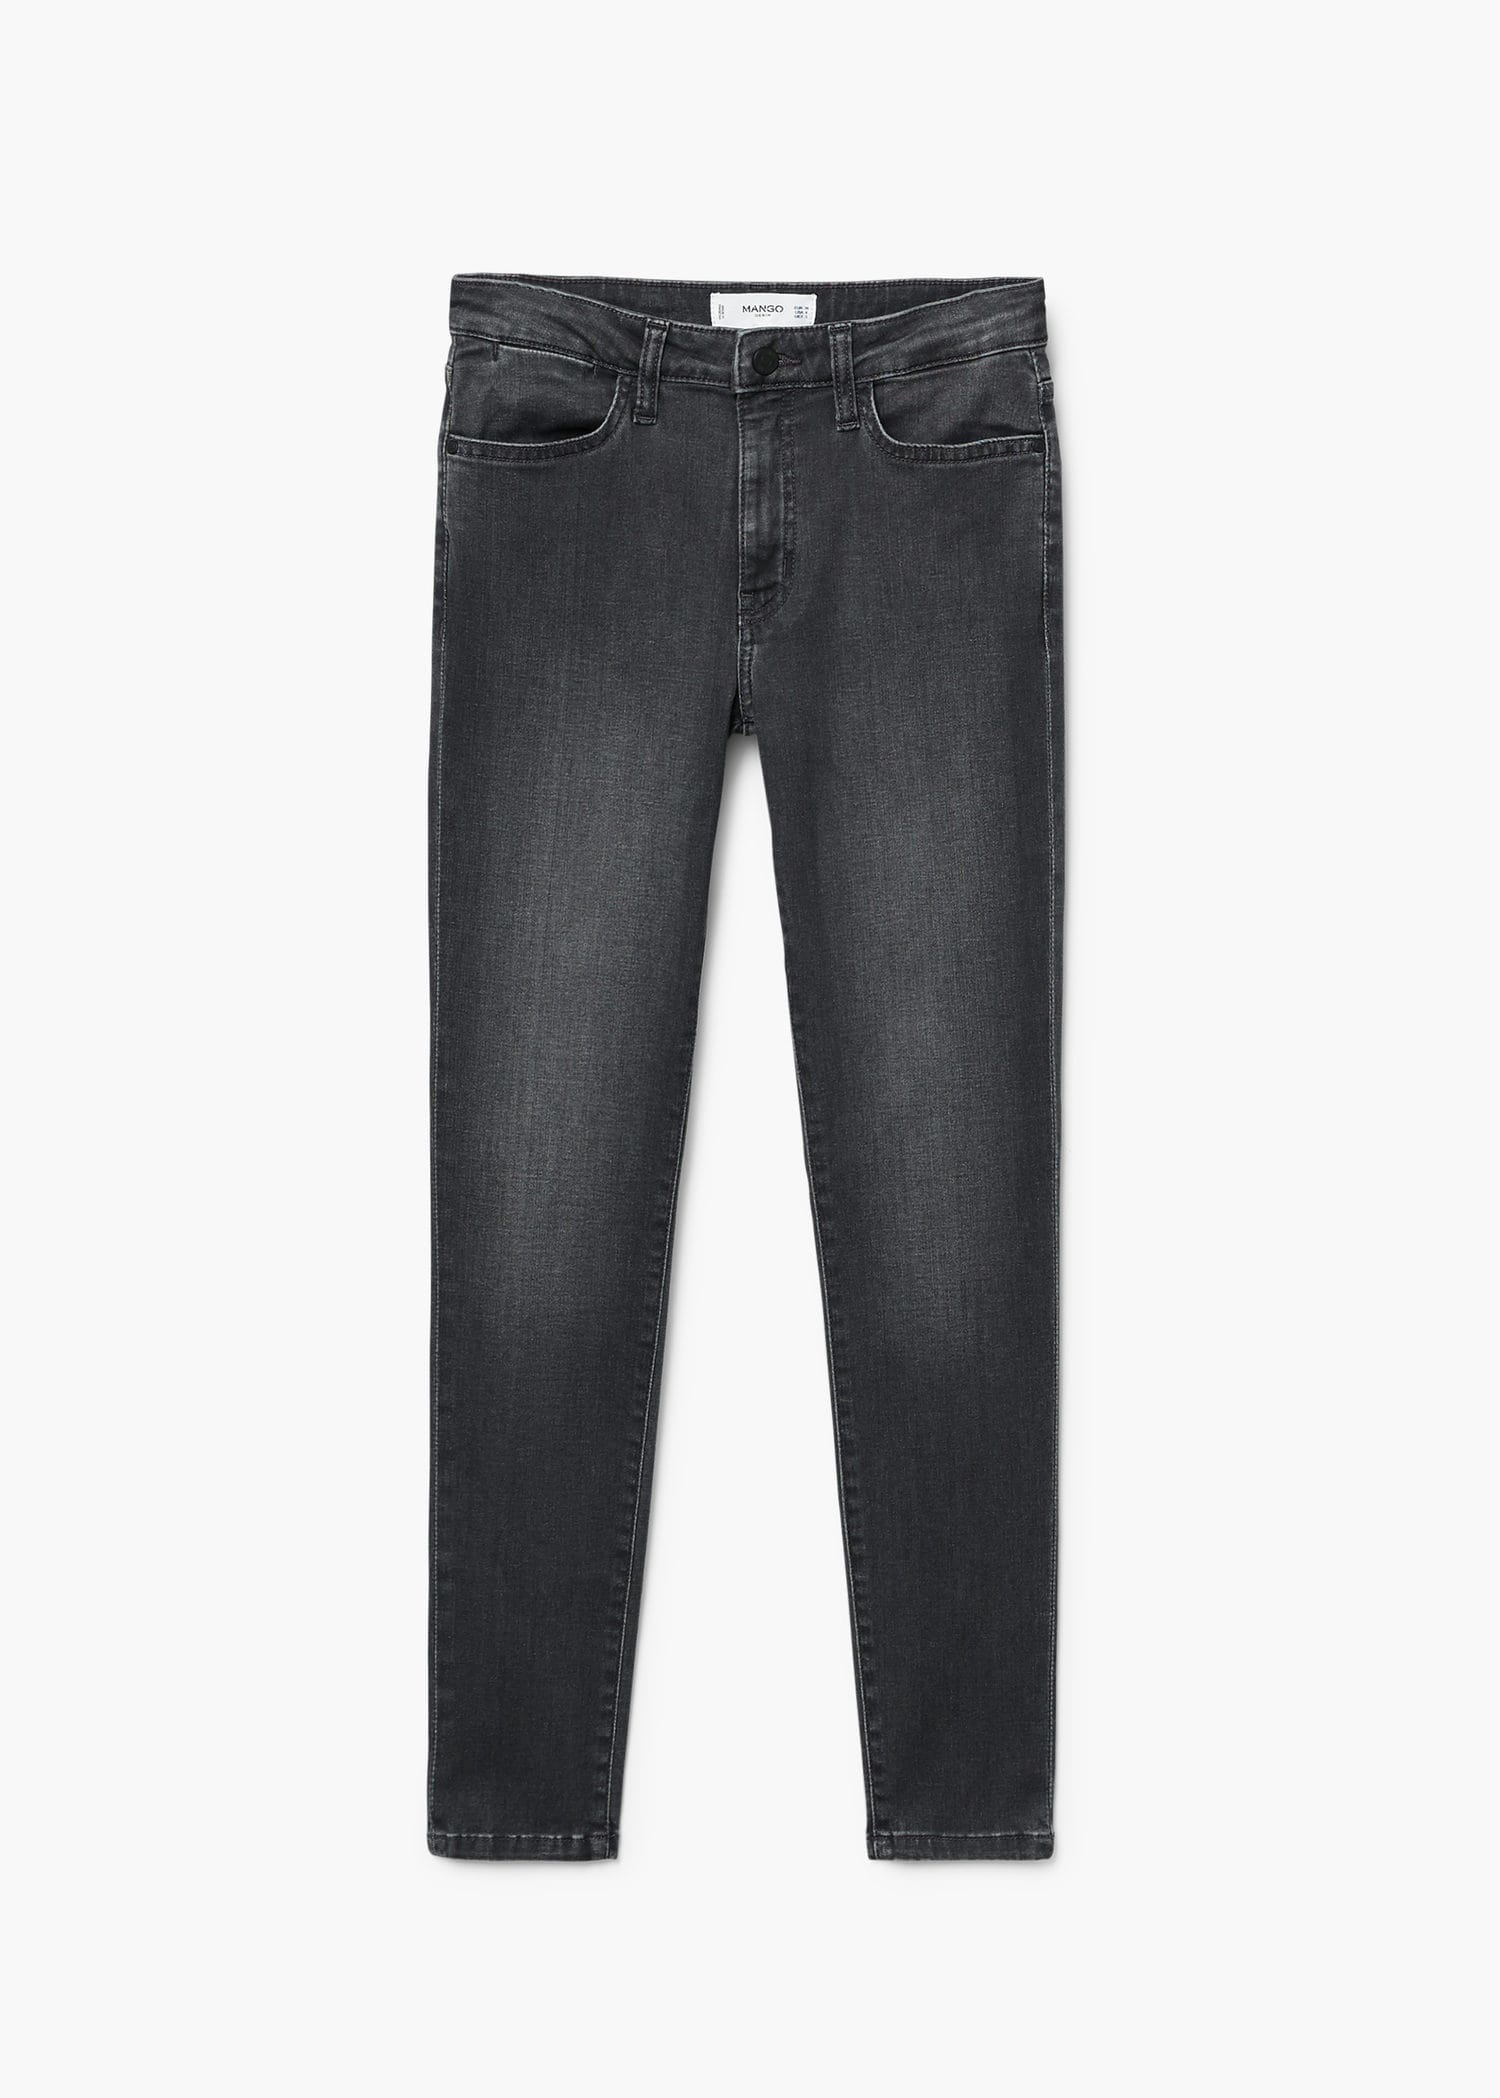 شلوار جینز زنانه 24114 سایز 32 تا 44 مارک MANGO